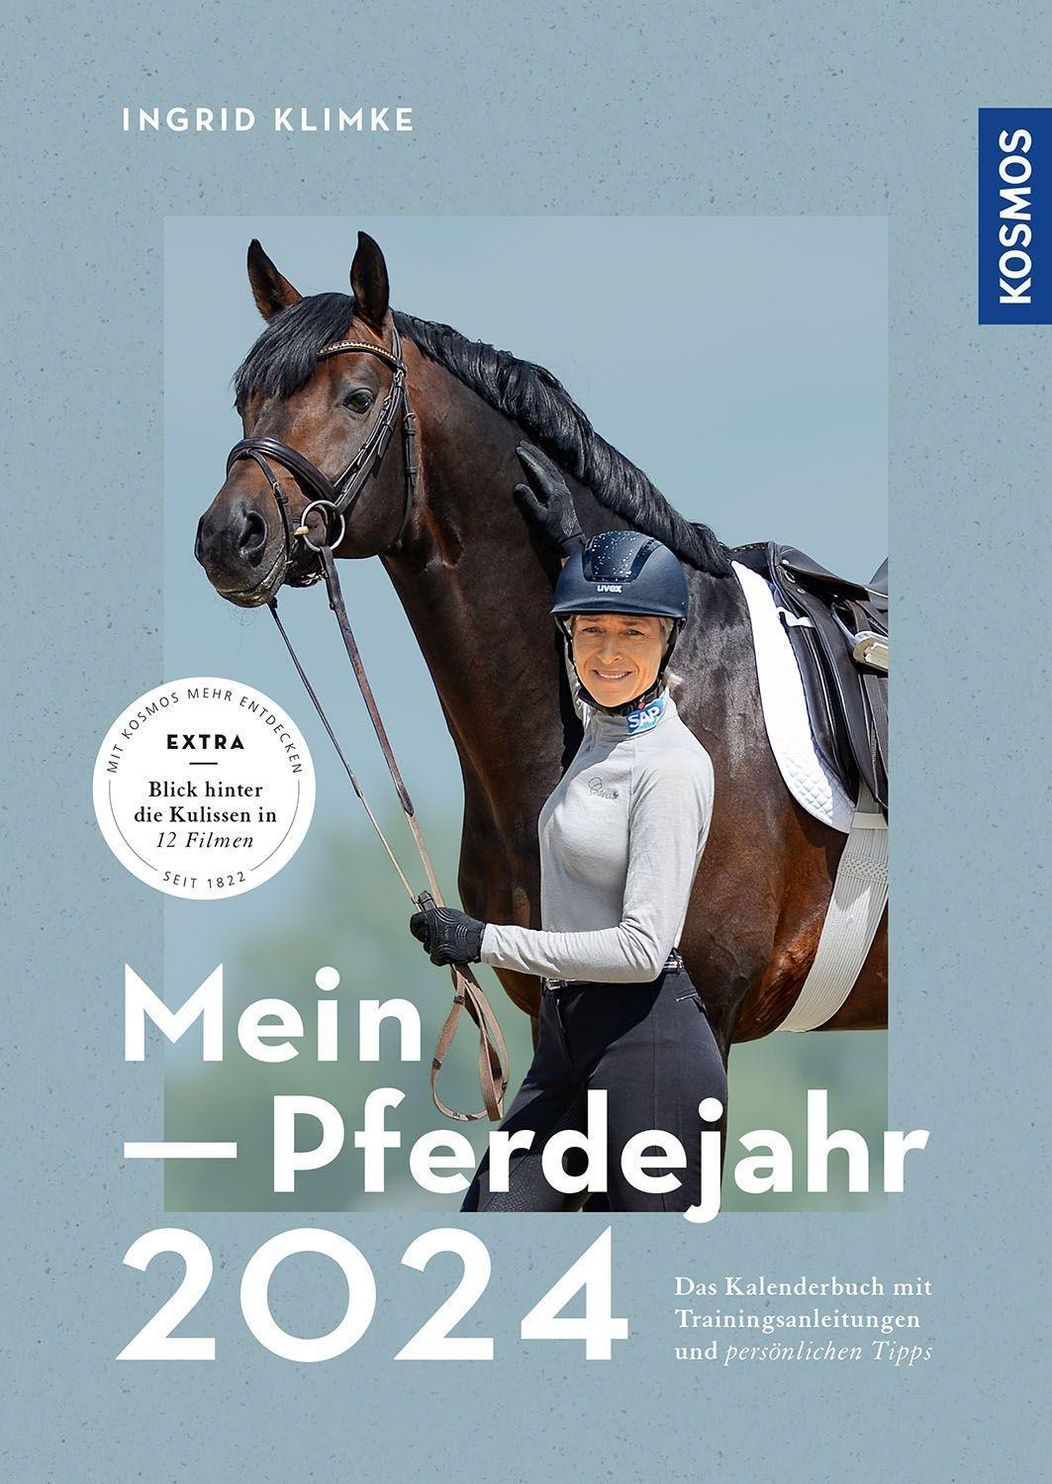 Mein Pferdejahr 2024 Buch von Ingrid Klimke versandkostenfrei bestellen